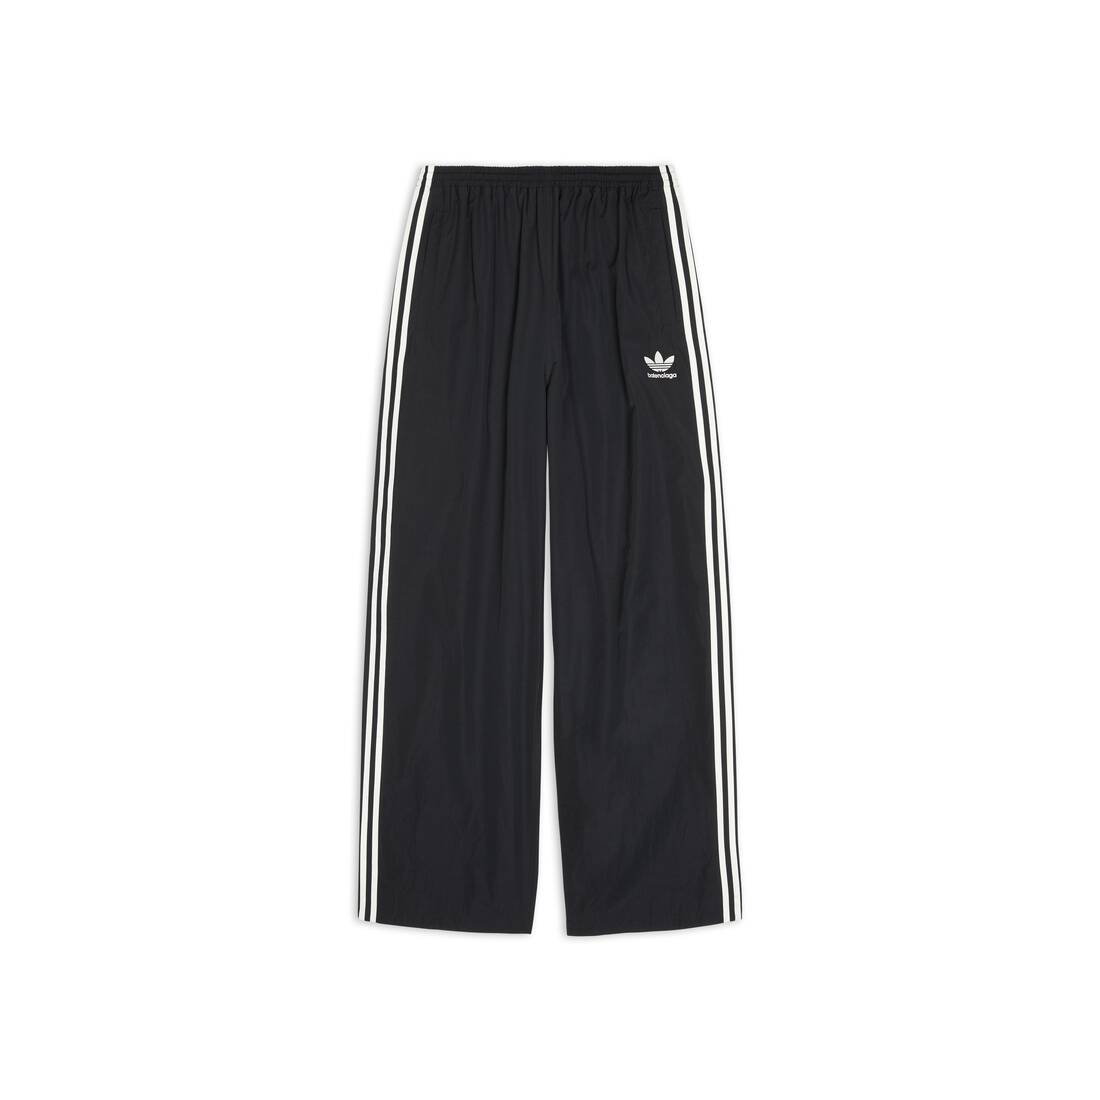 Balenciaga / Adidas Tracksuit パンツ のために メンズ で ブラック